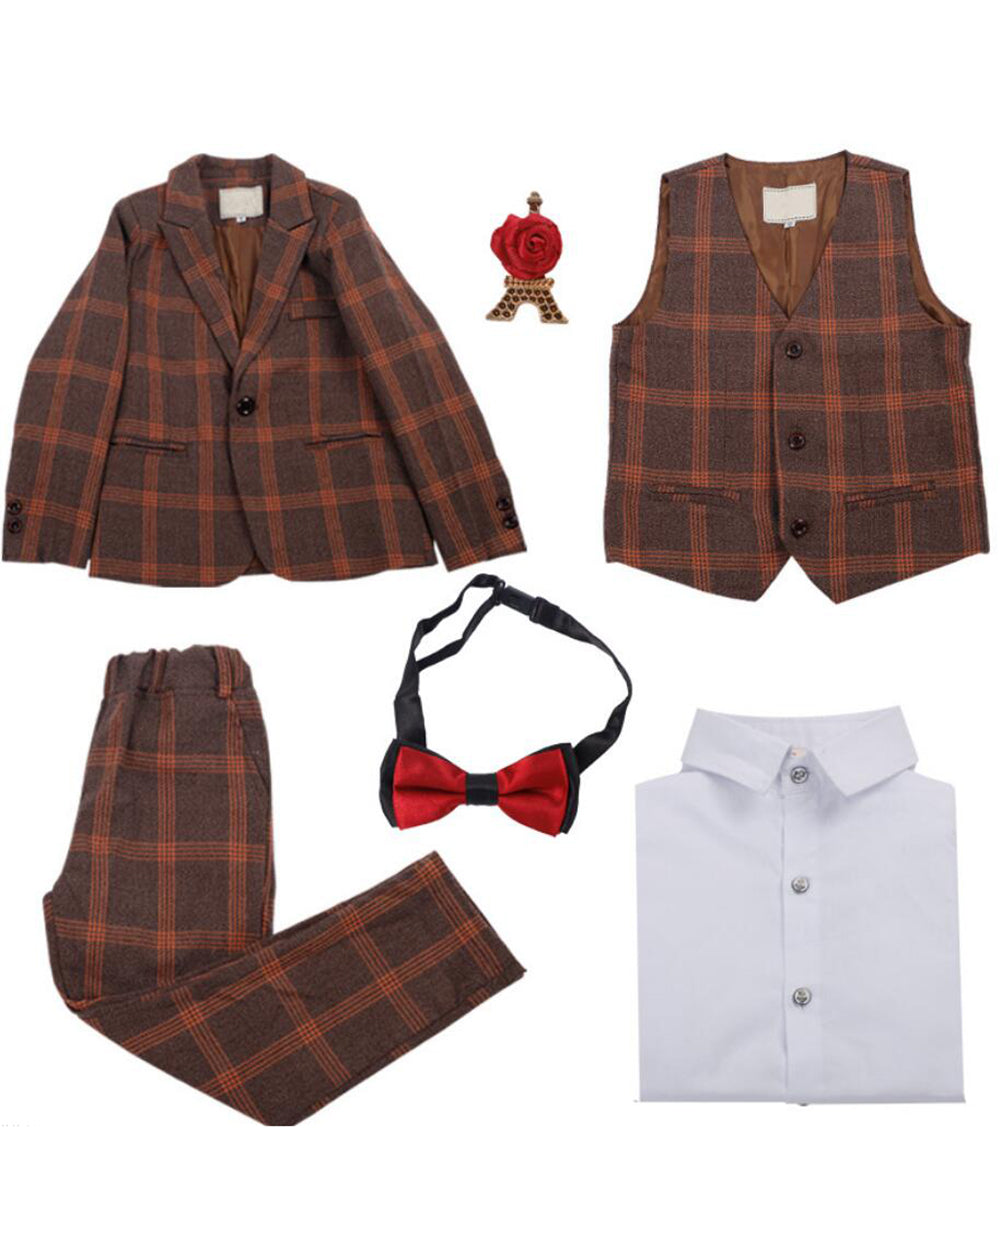 Boys' Khaki Formal Suit  4 piece Dresswear suit set with jacket,shirt,vest and pants